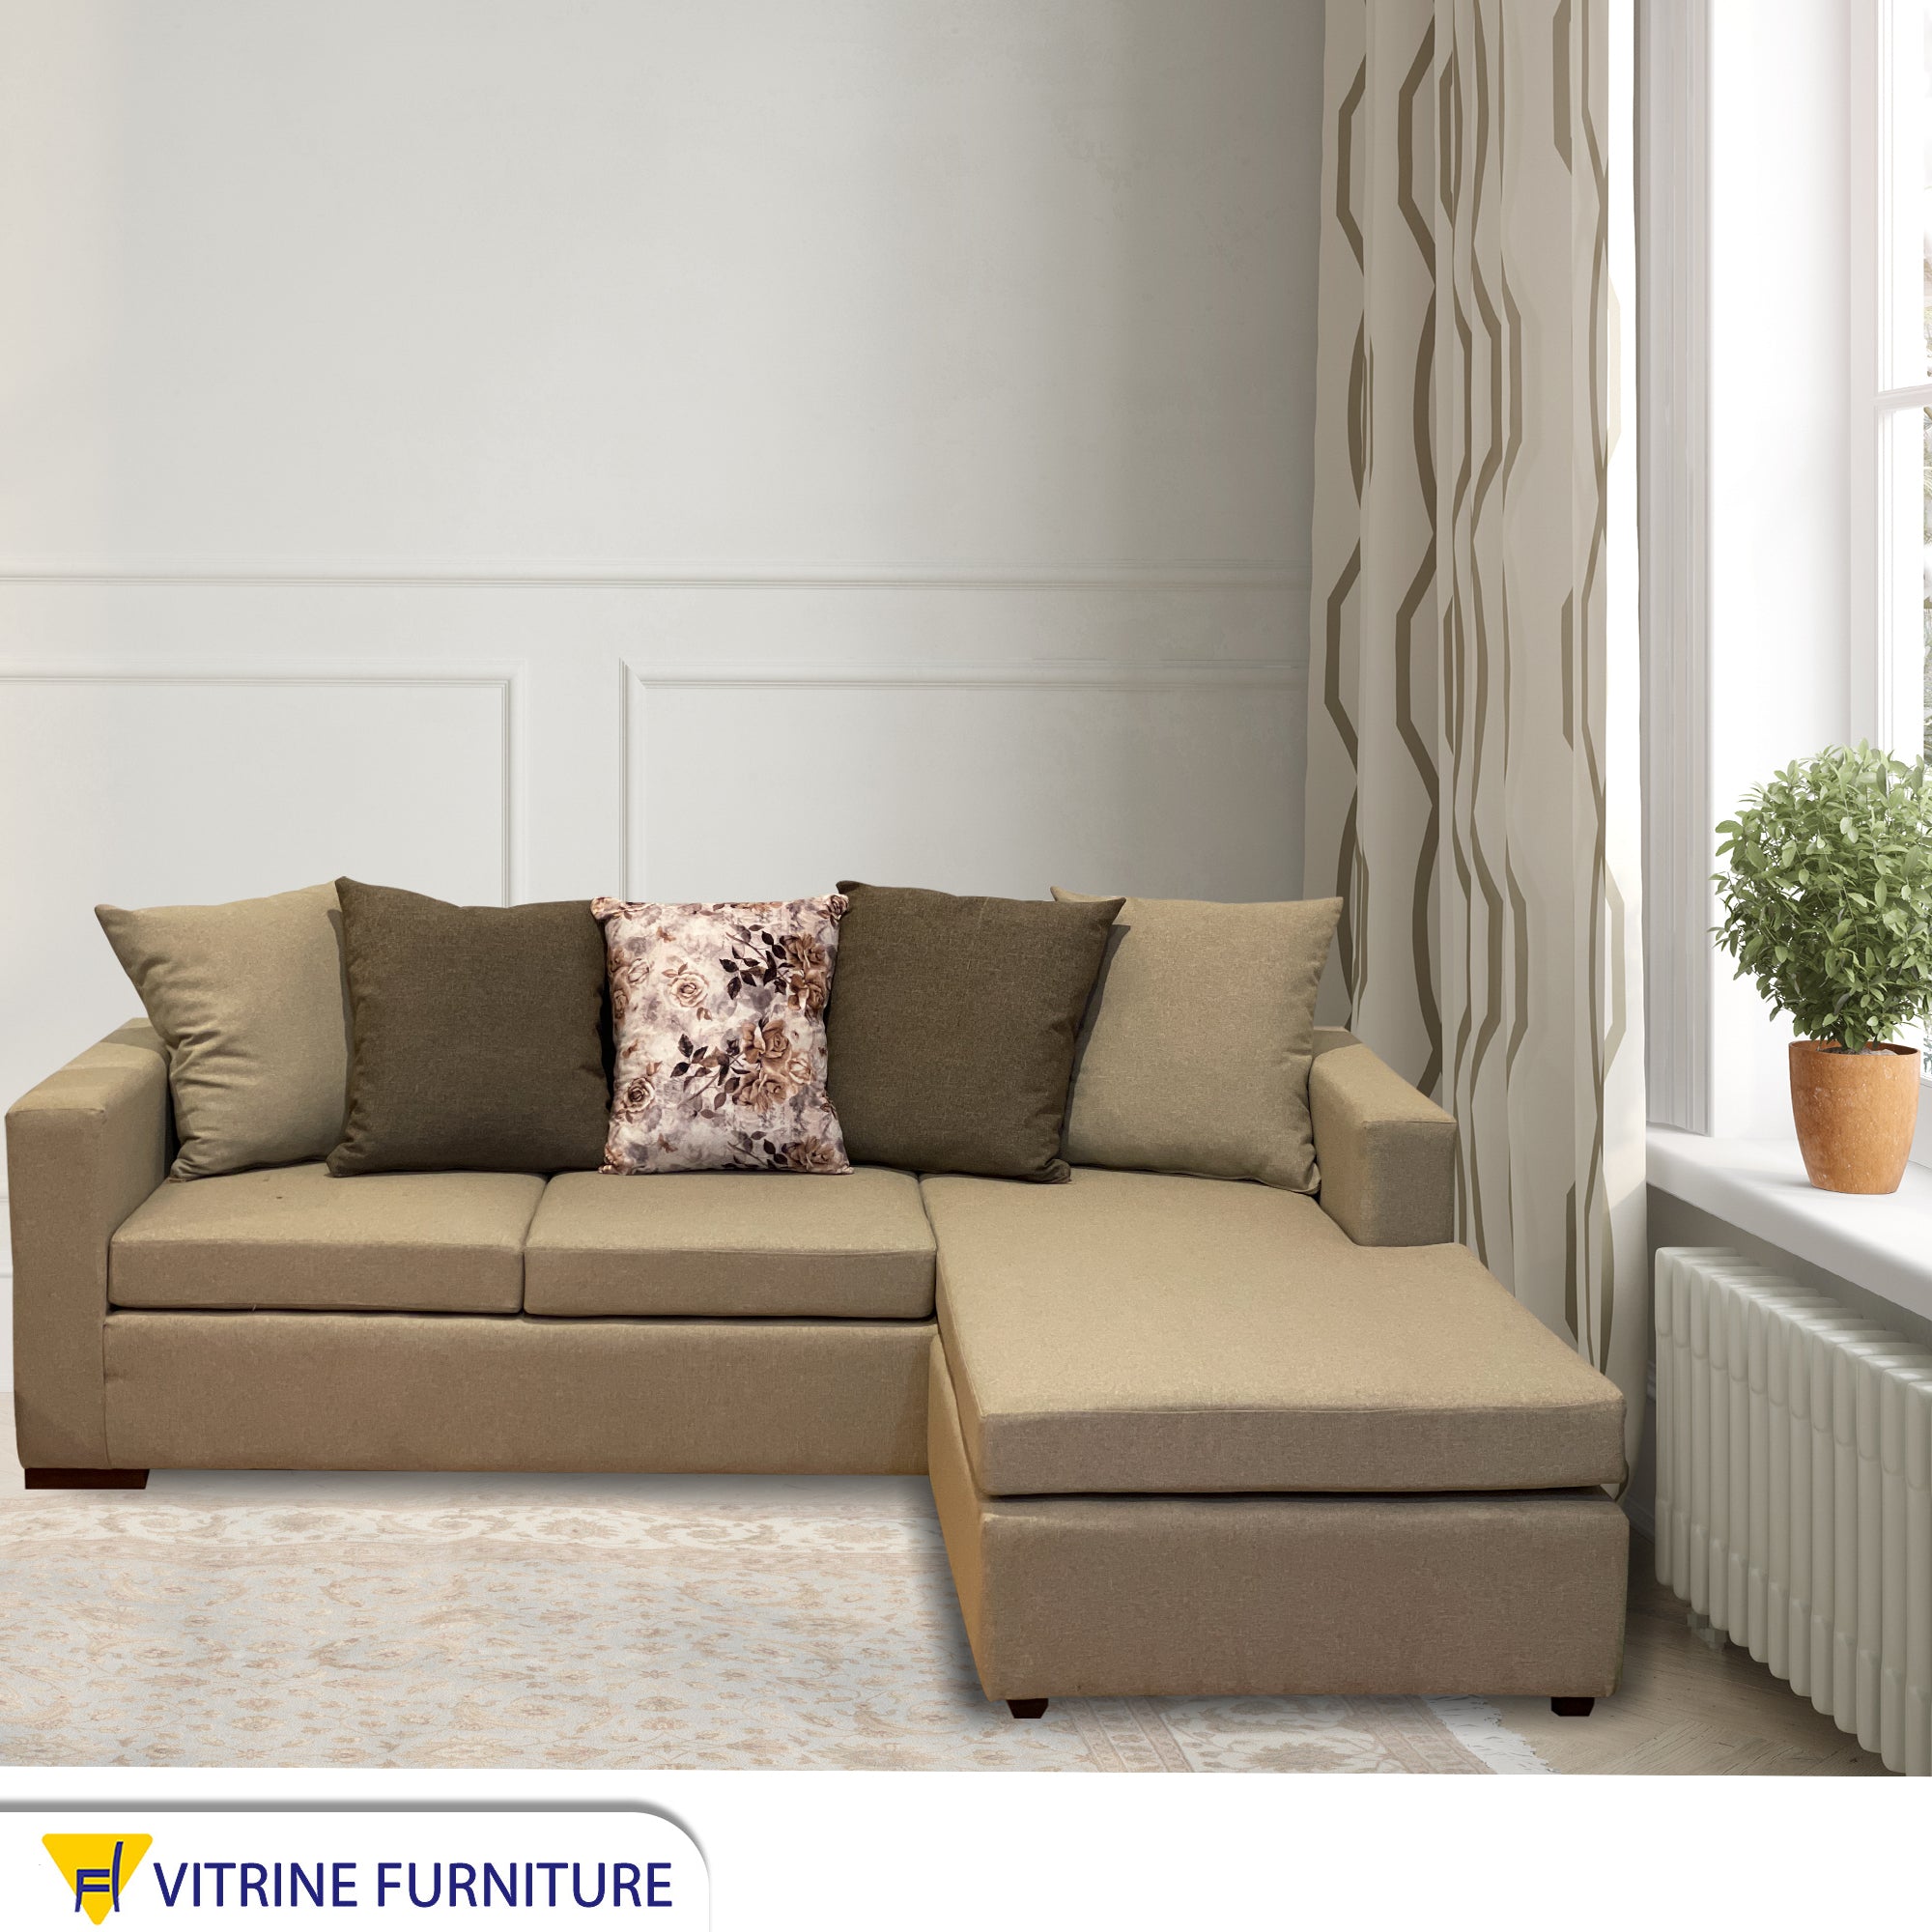 L living room corner beige*olive